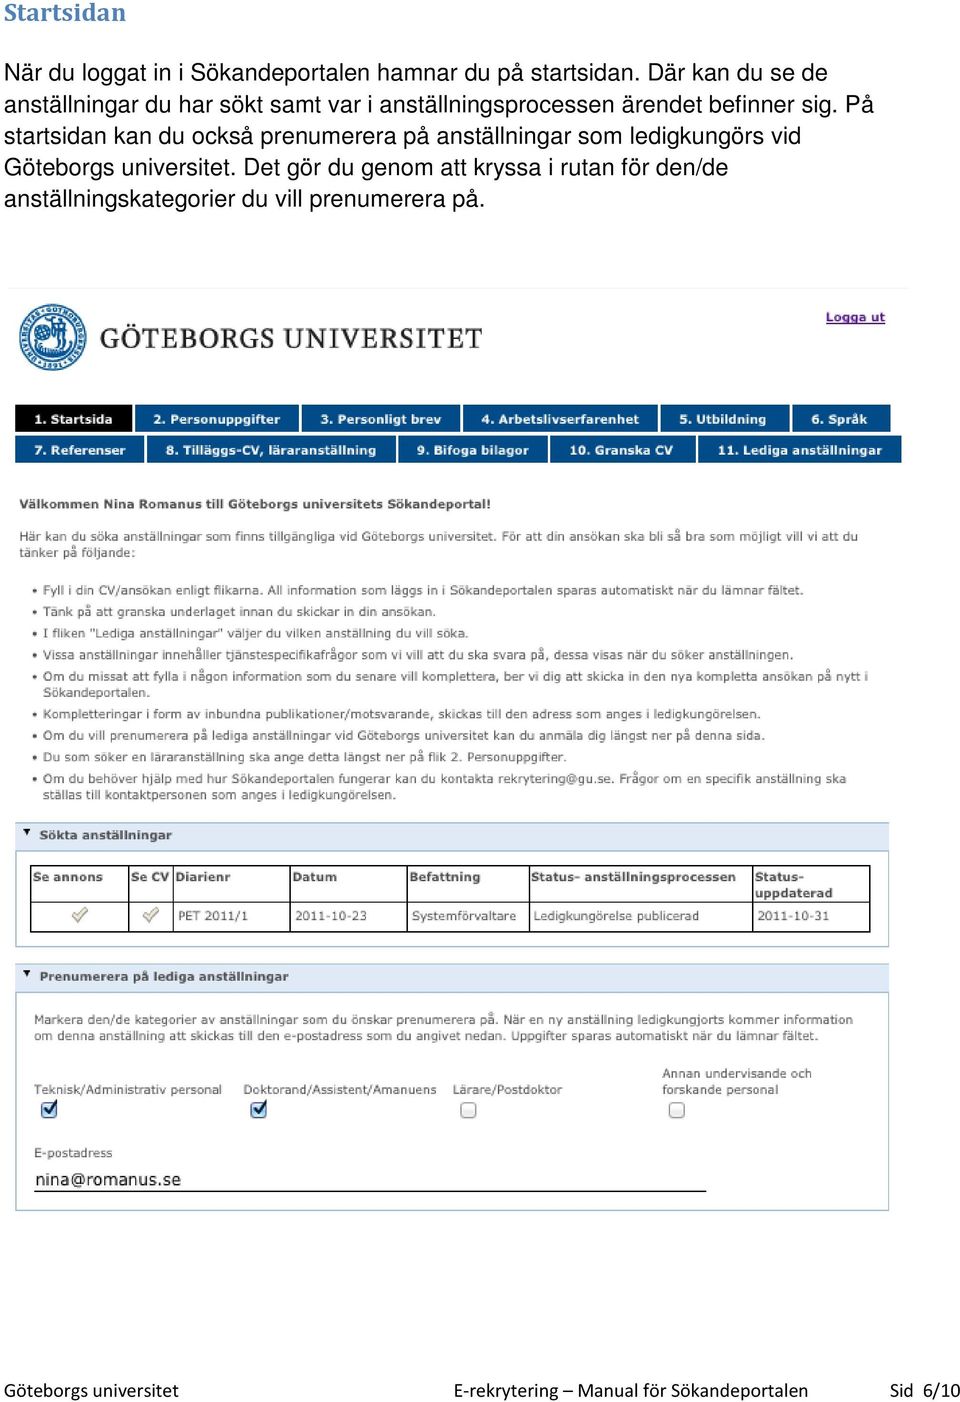 På startsidan kan du också prenumerera på anställningar som ledigkungörs vid Göteborgs universitet.